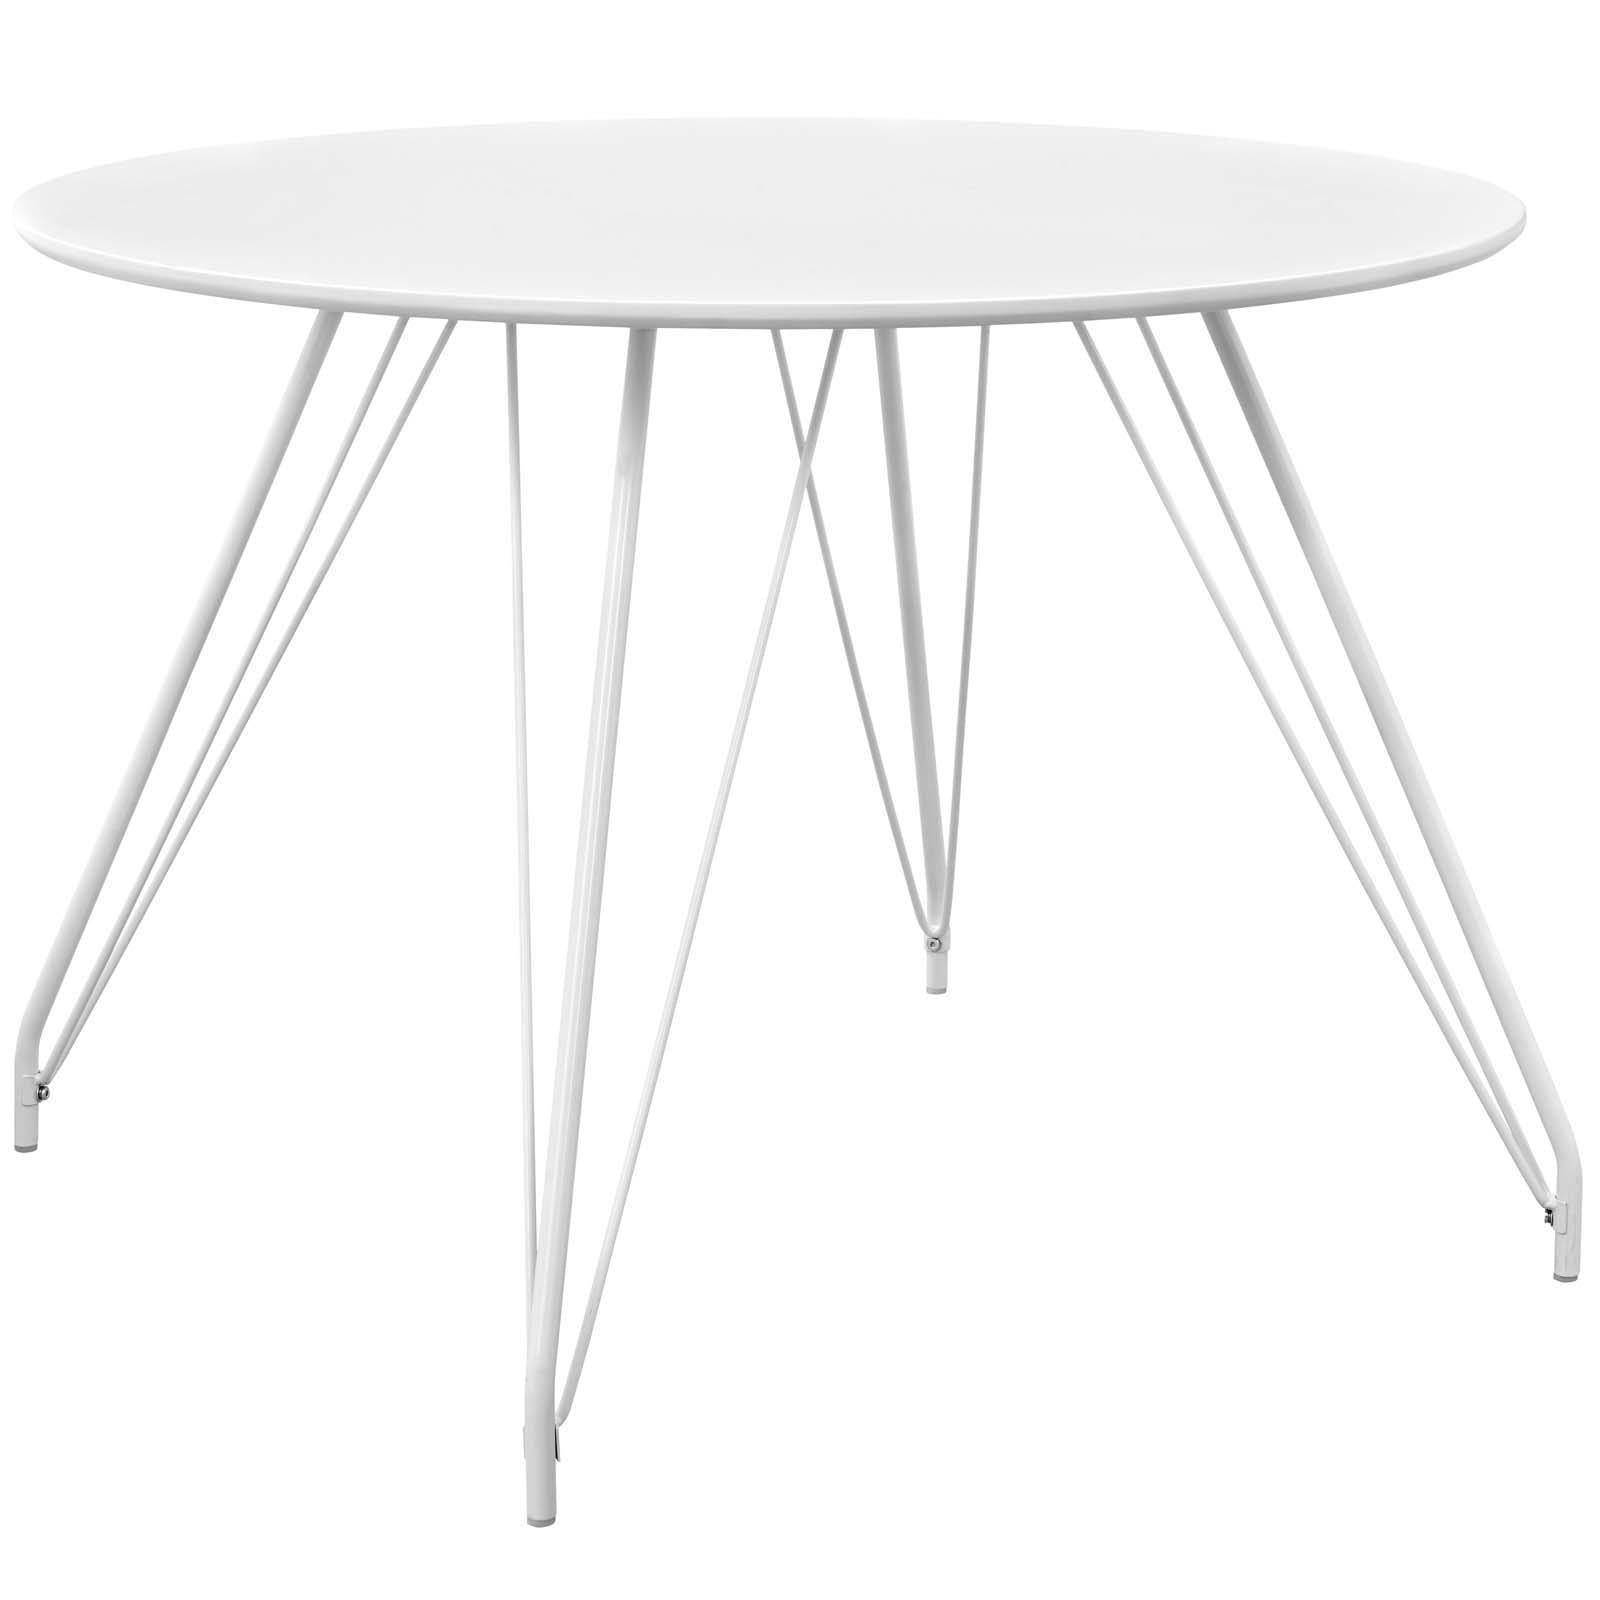 Modway Furniture Modern Satellite Circular Dining Table - EEI-2673